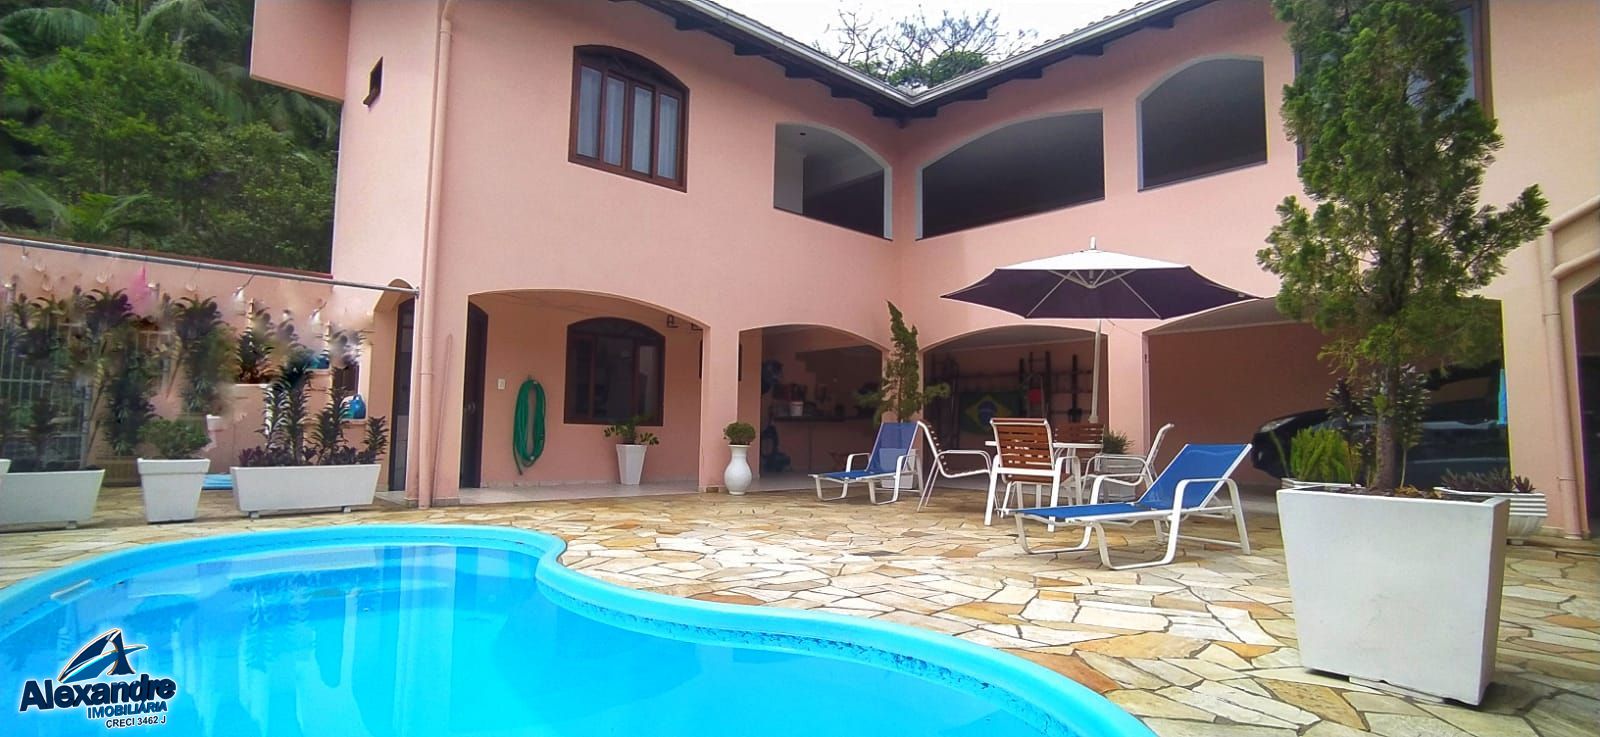 Casa  venda  no Tifa Martins - Jaragu do Sul, SC. Imveis